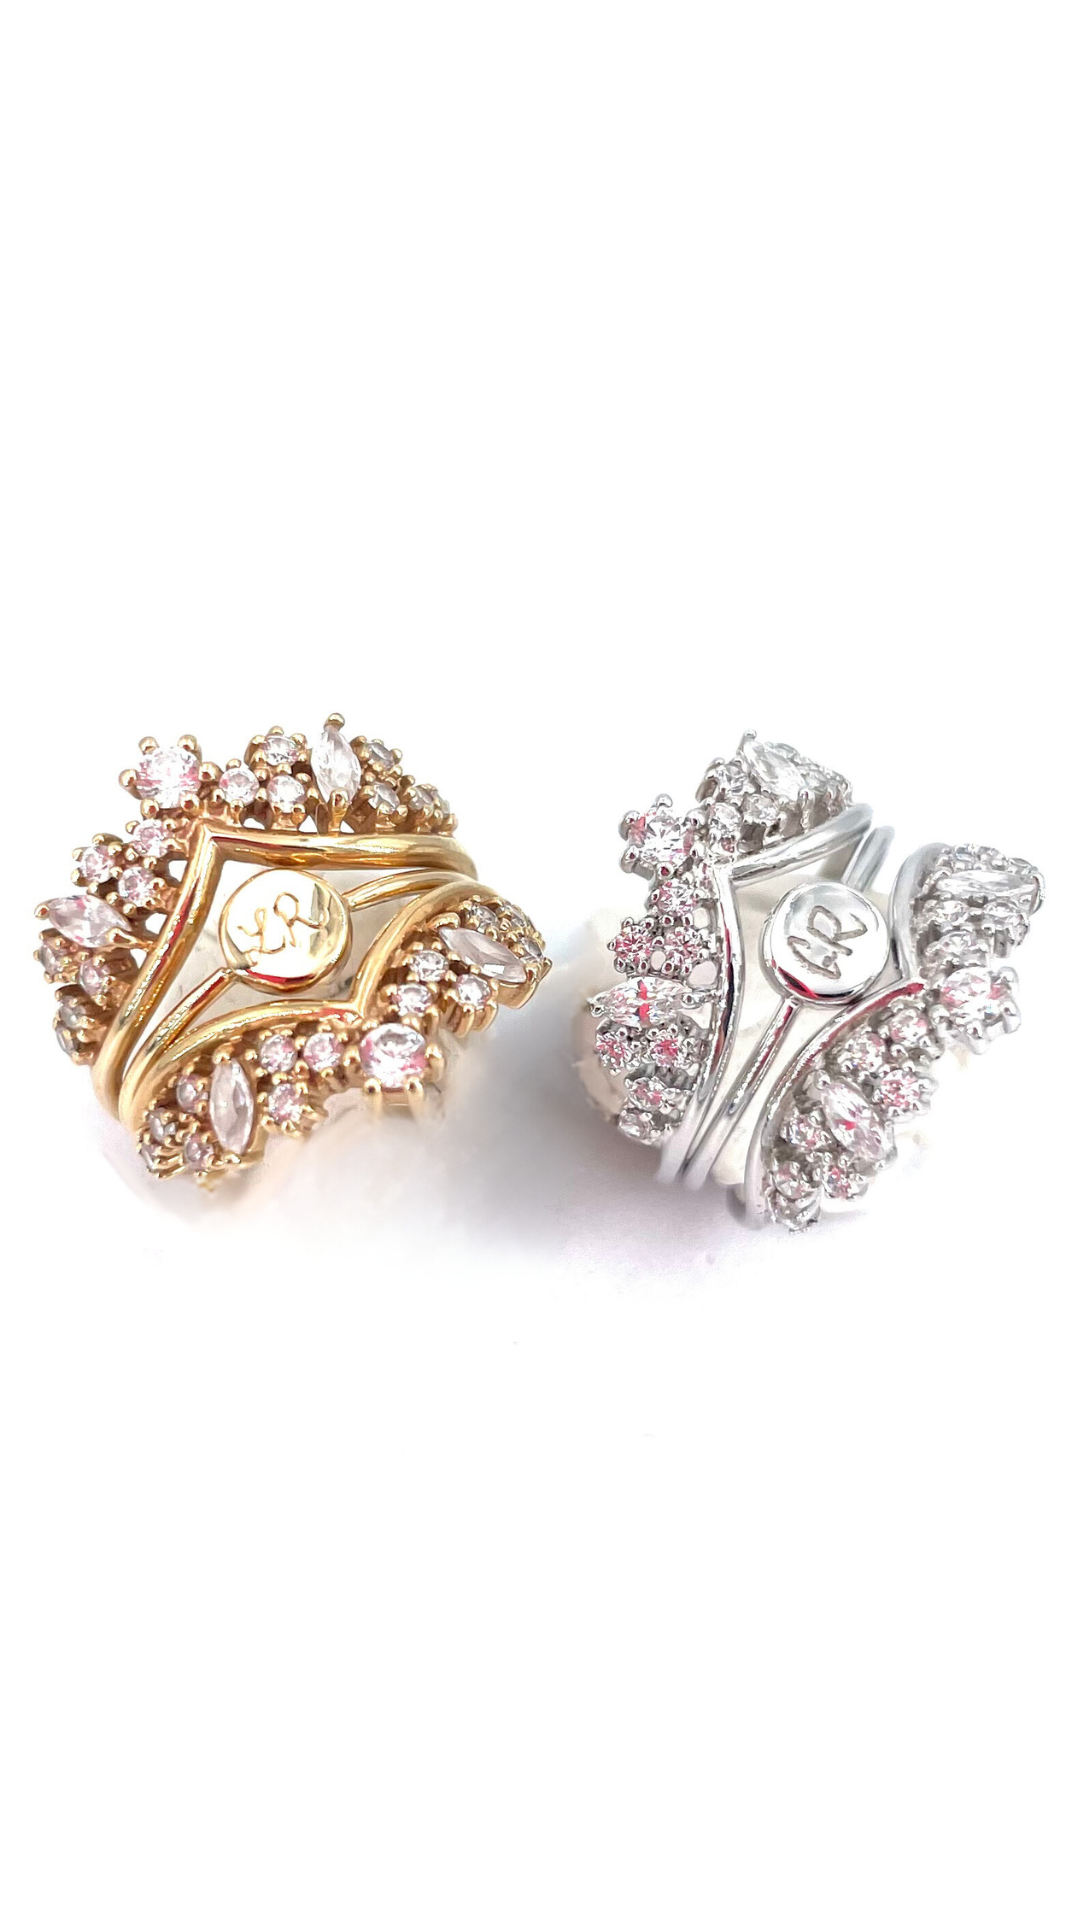 Clairette Collection bijoux gravés et personnalisés à la main bague queen double